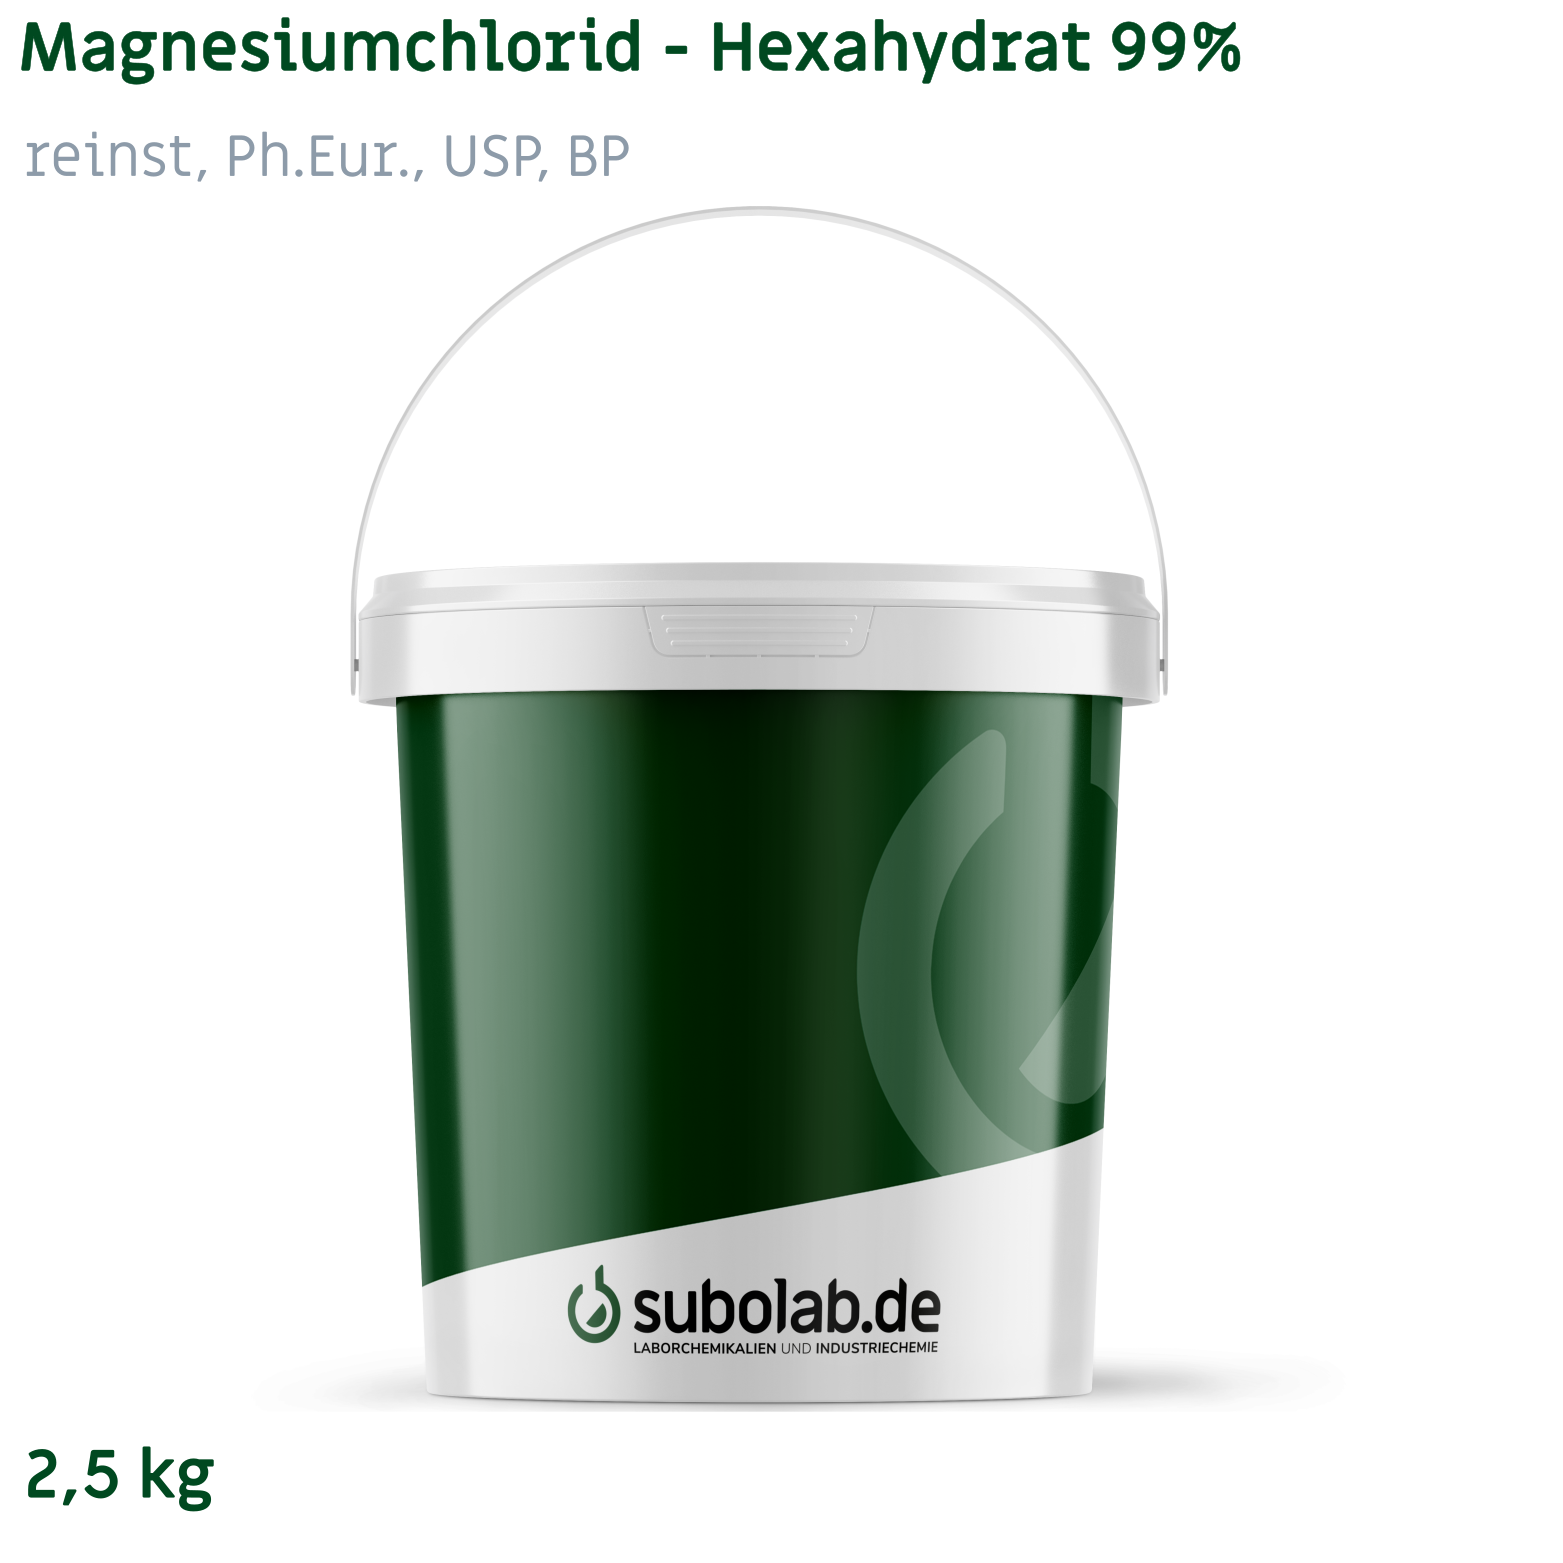 Bild von Magnesiumchlorid - Hexahydrat 99% reinst, Ph.Eur., USP, BP (2,5 kg)